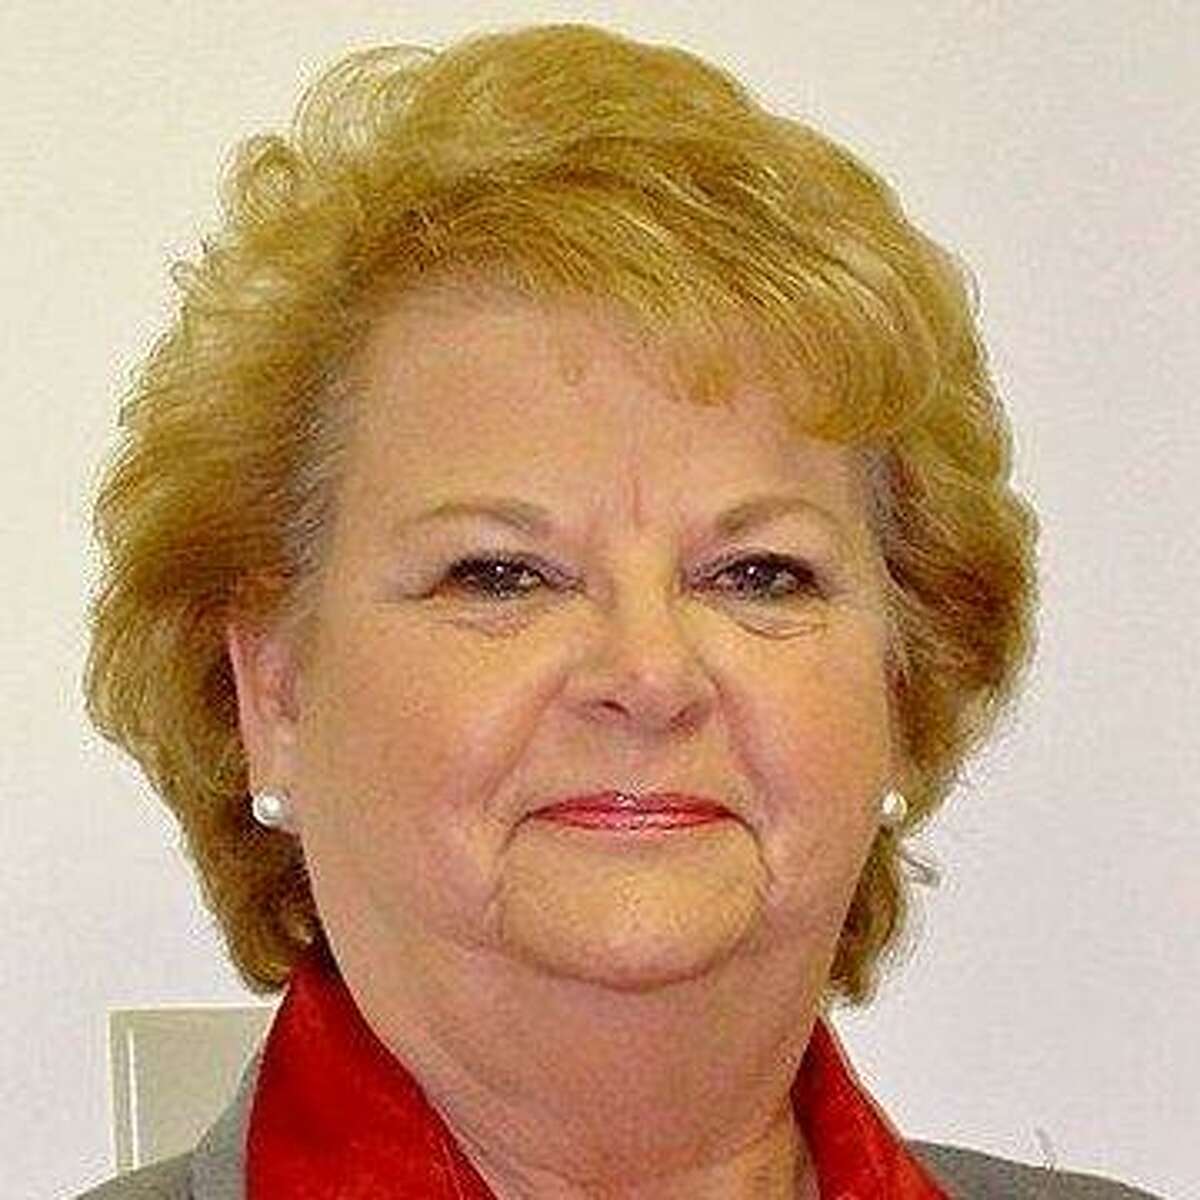 Republican Judy Cope has held the Precinct 4 position since 2003.